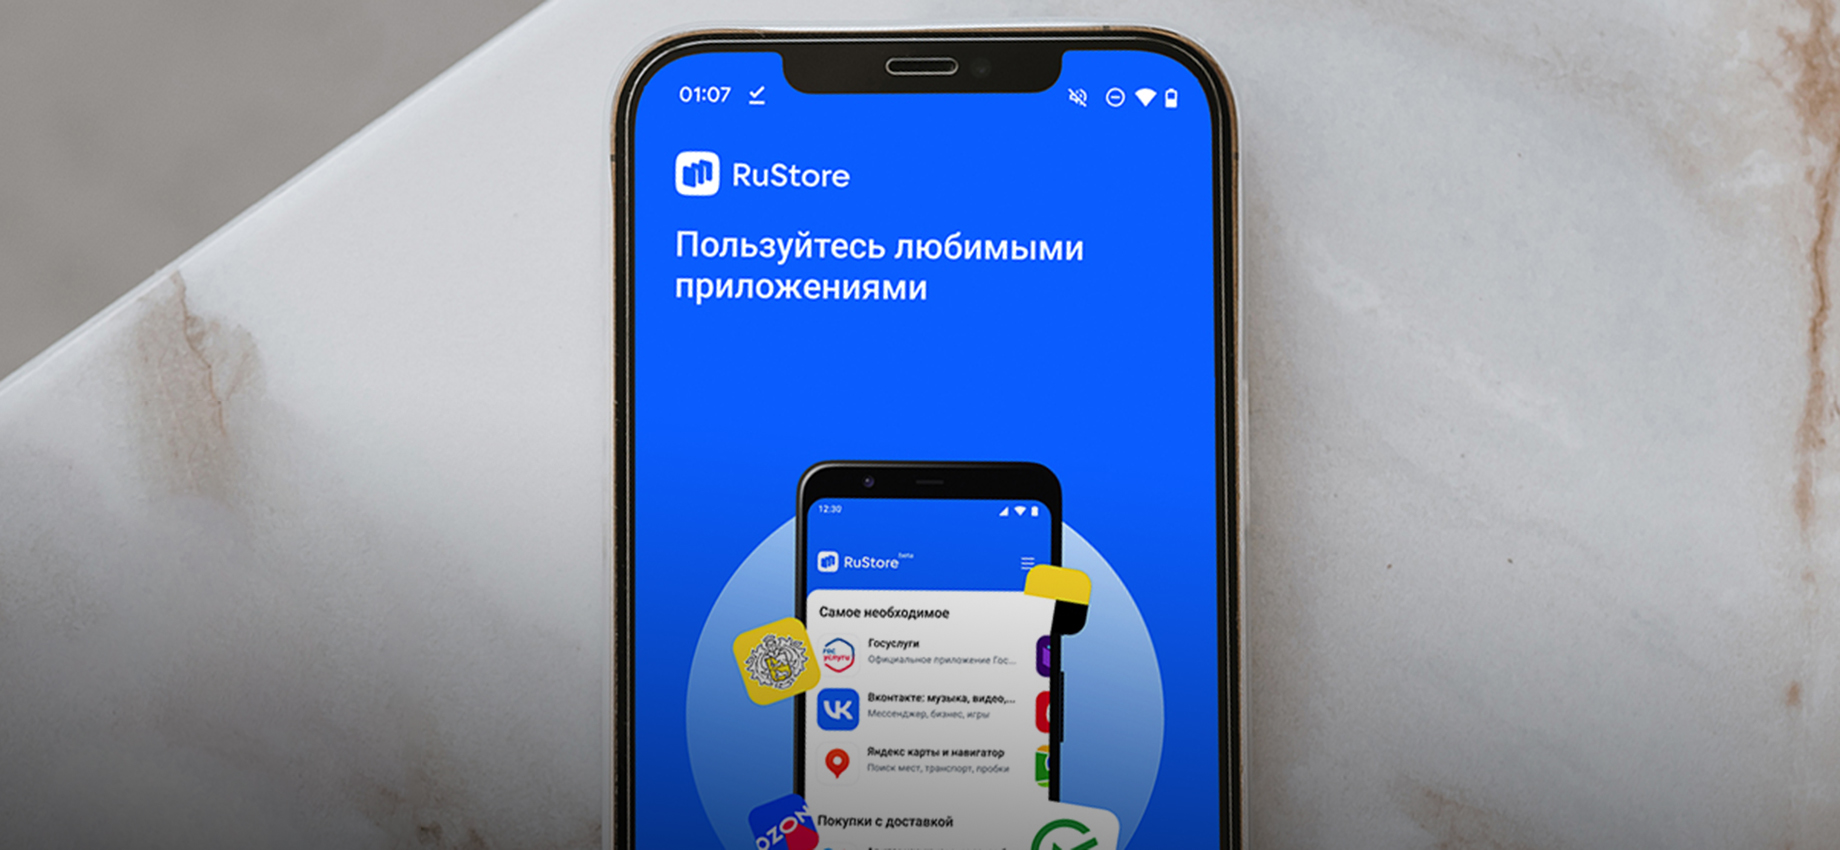 RuStore: как установить и пользоваться российским магазином приложений